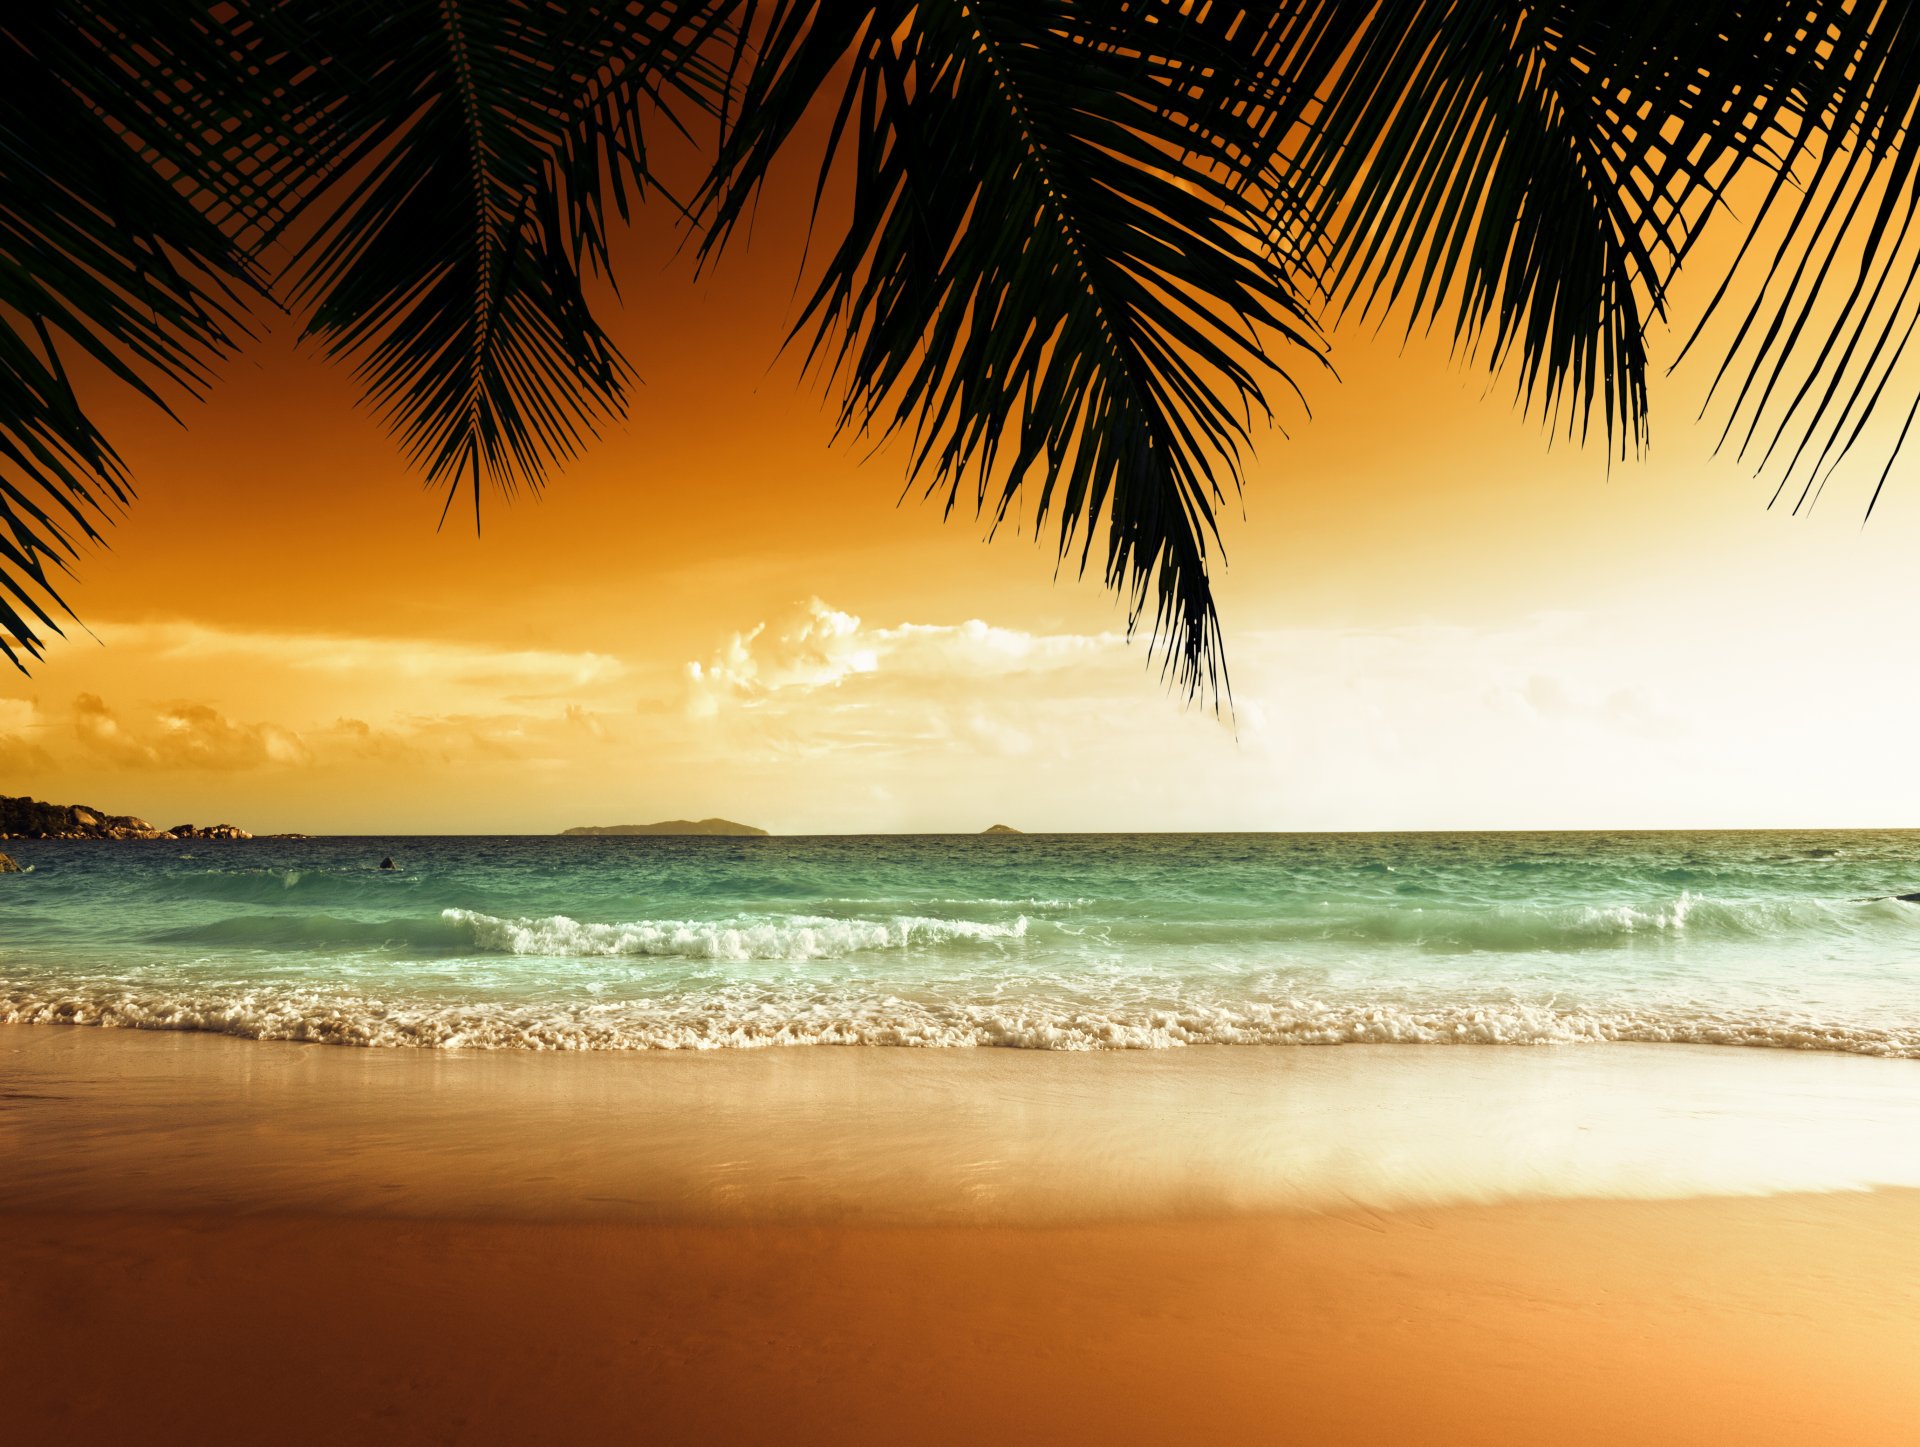 tropicale paradiso spiaggia palme mare oceano tramonto tropici sabbia spiaggia